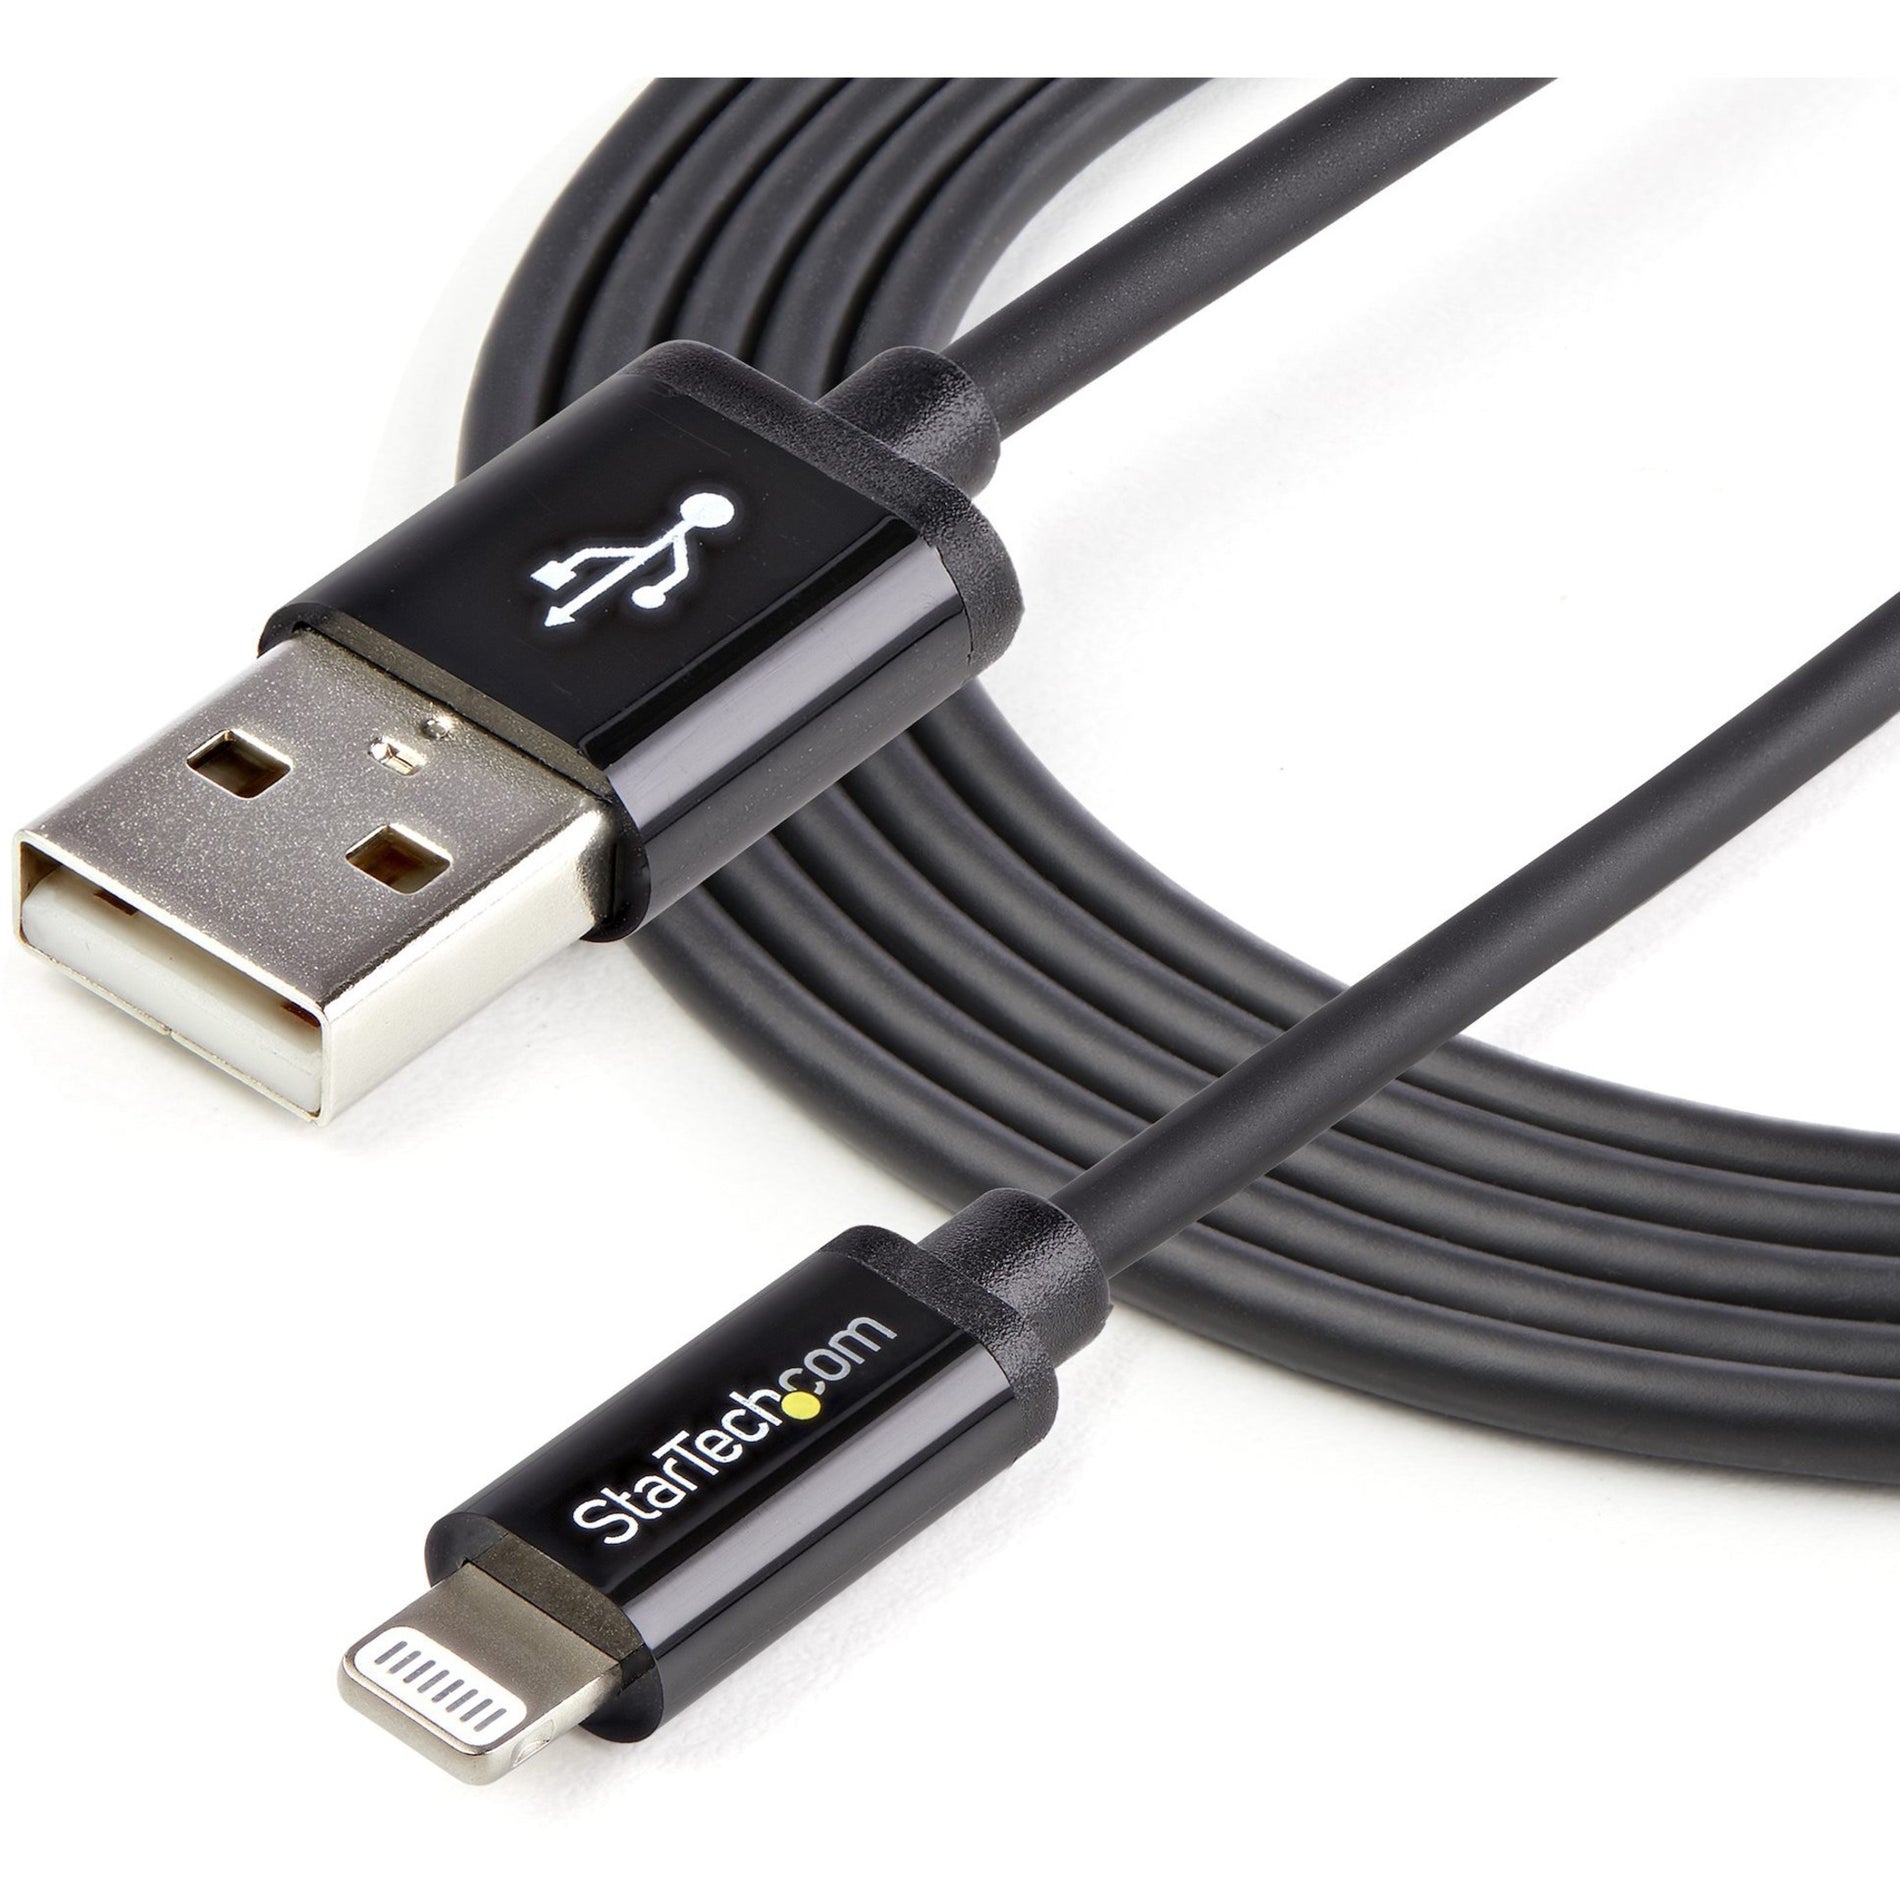 Câble de transfert de données Lightning/USB Sync/Charge StarTech.com USBLT2MB 6ft de long noir